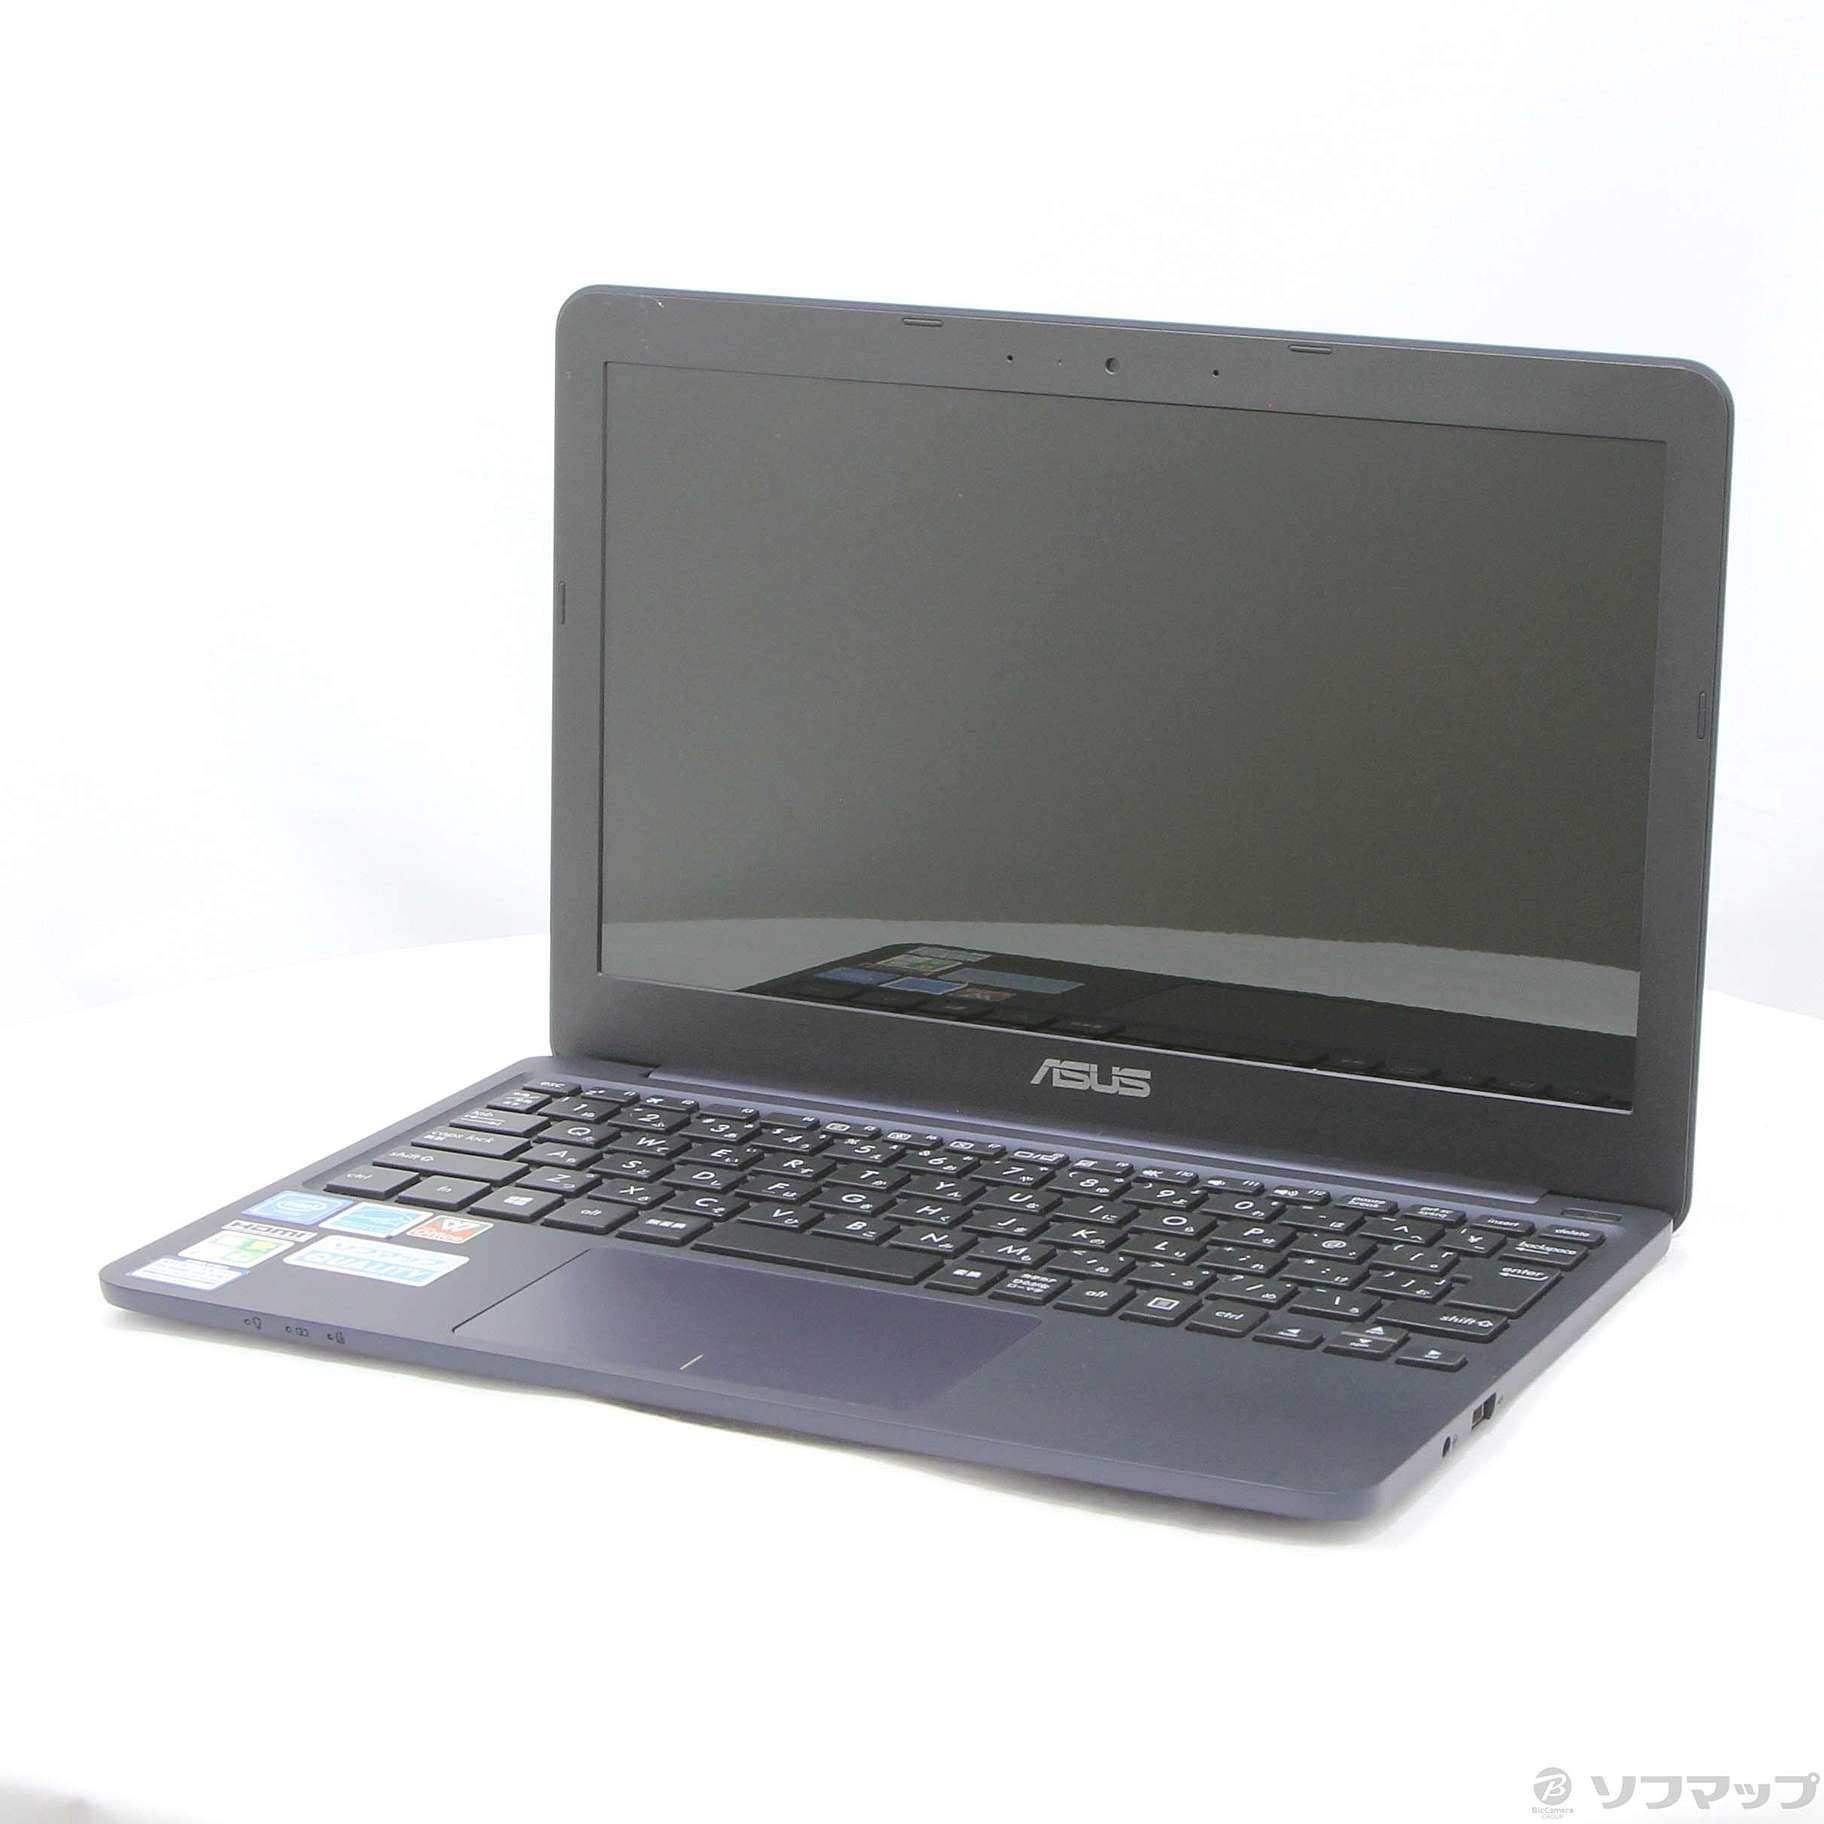 (中古)ASUS 格安安心パソコン VivoBook E200HA E200HA-8350B ダークブルー (Windows 10)(344-ud)